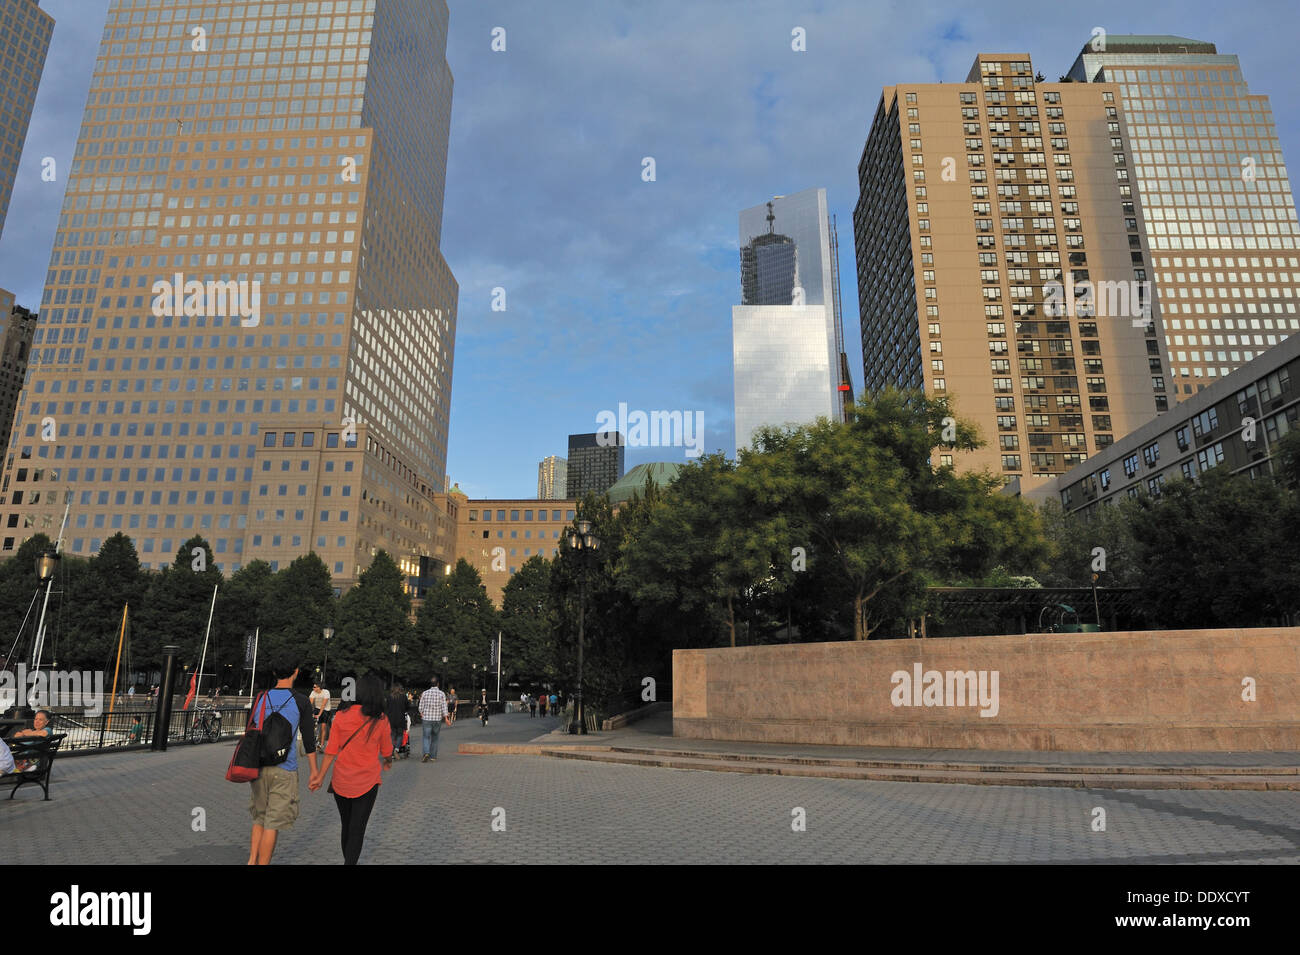 Esplanade Plaza in Battery Park City, un quartiere di Lower Manhattan, guardando ad est verso 4 World Trade Center. Sett. 7, 2013 Foto Stock